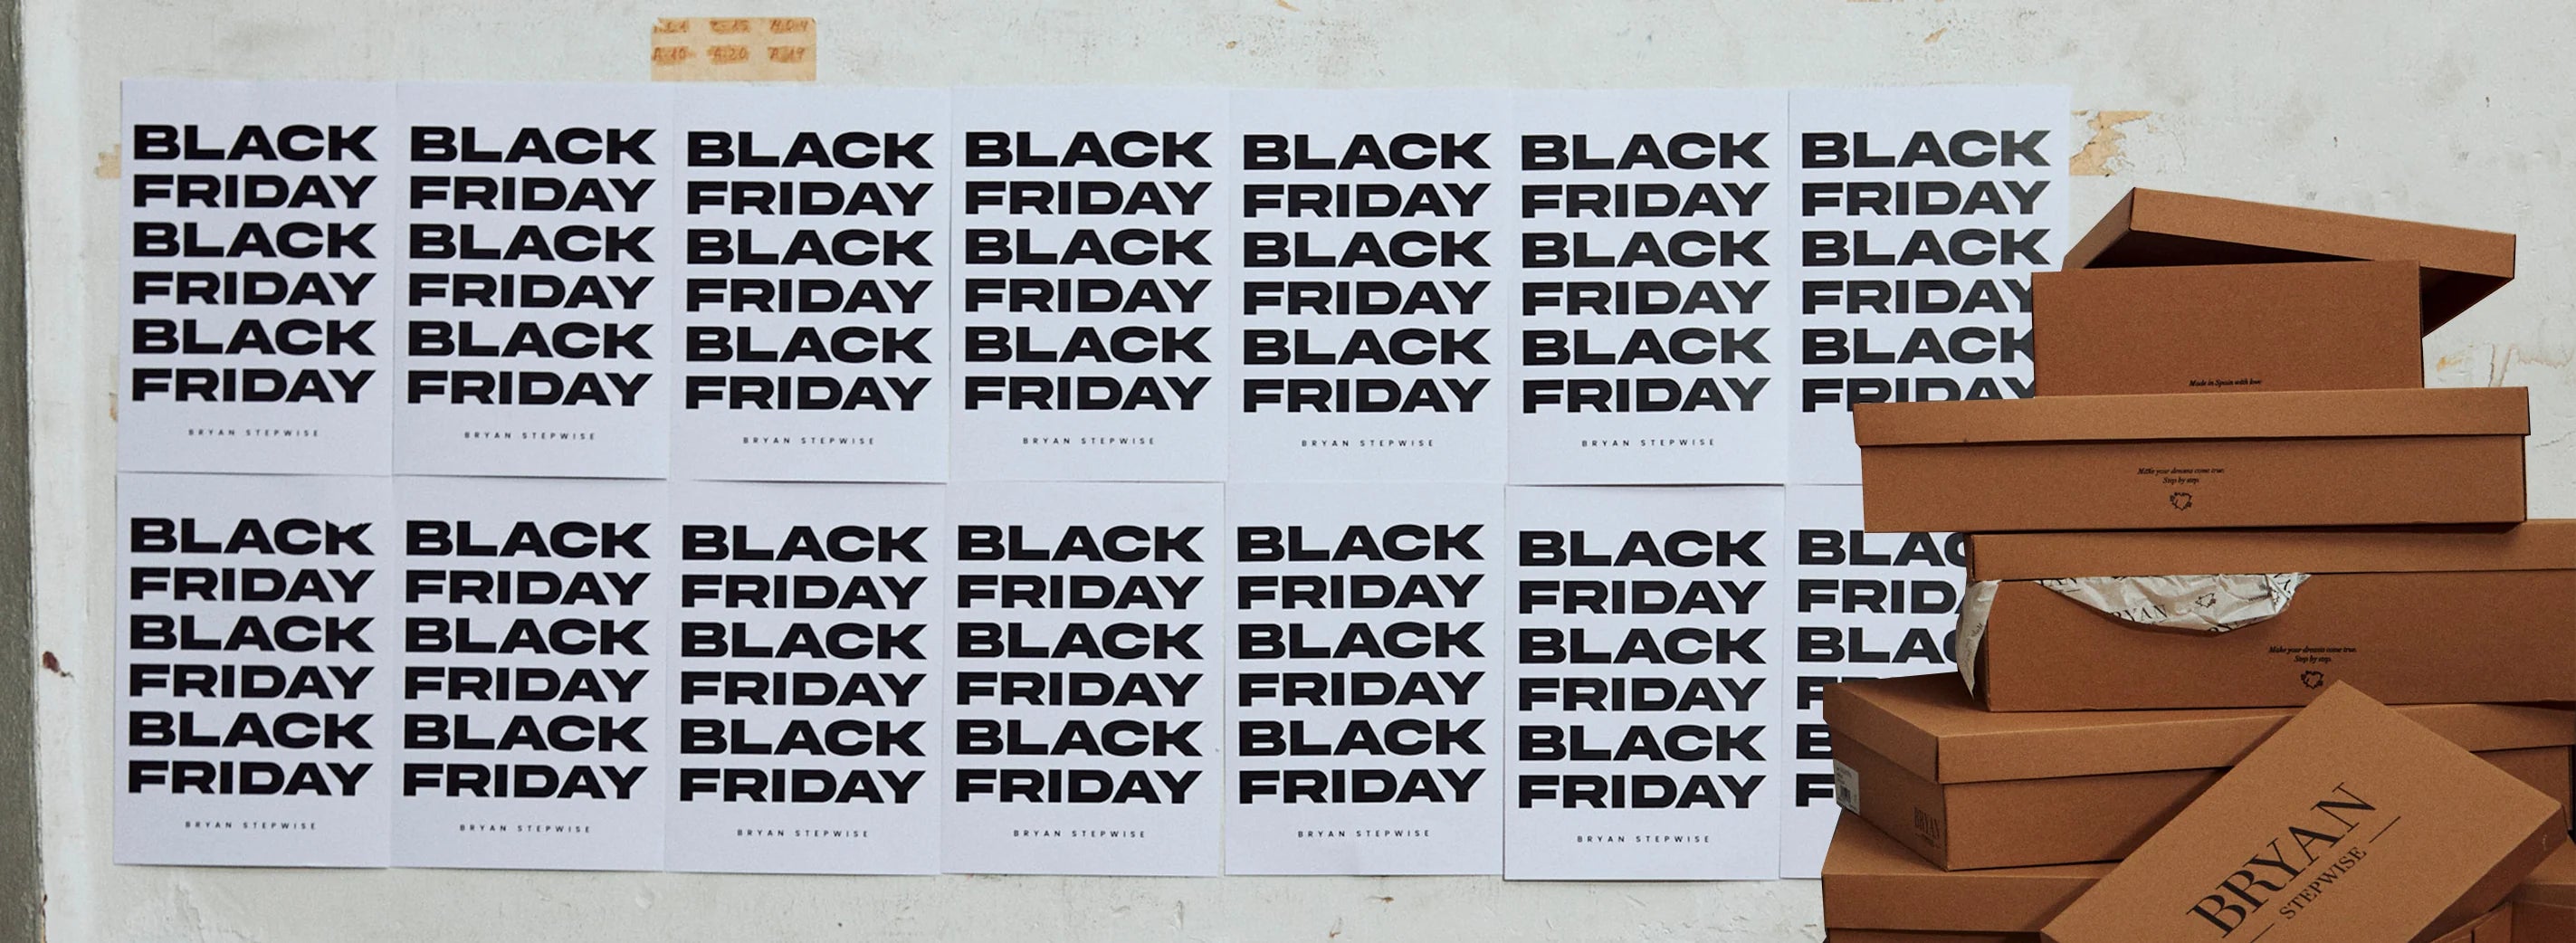 ¿Por qué hacemos Black Friday?